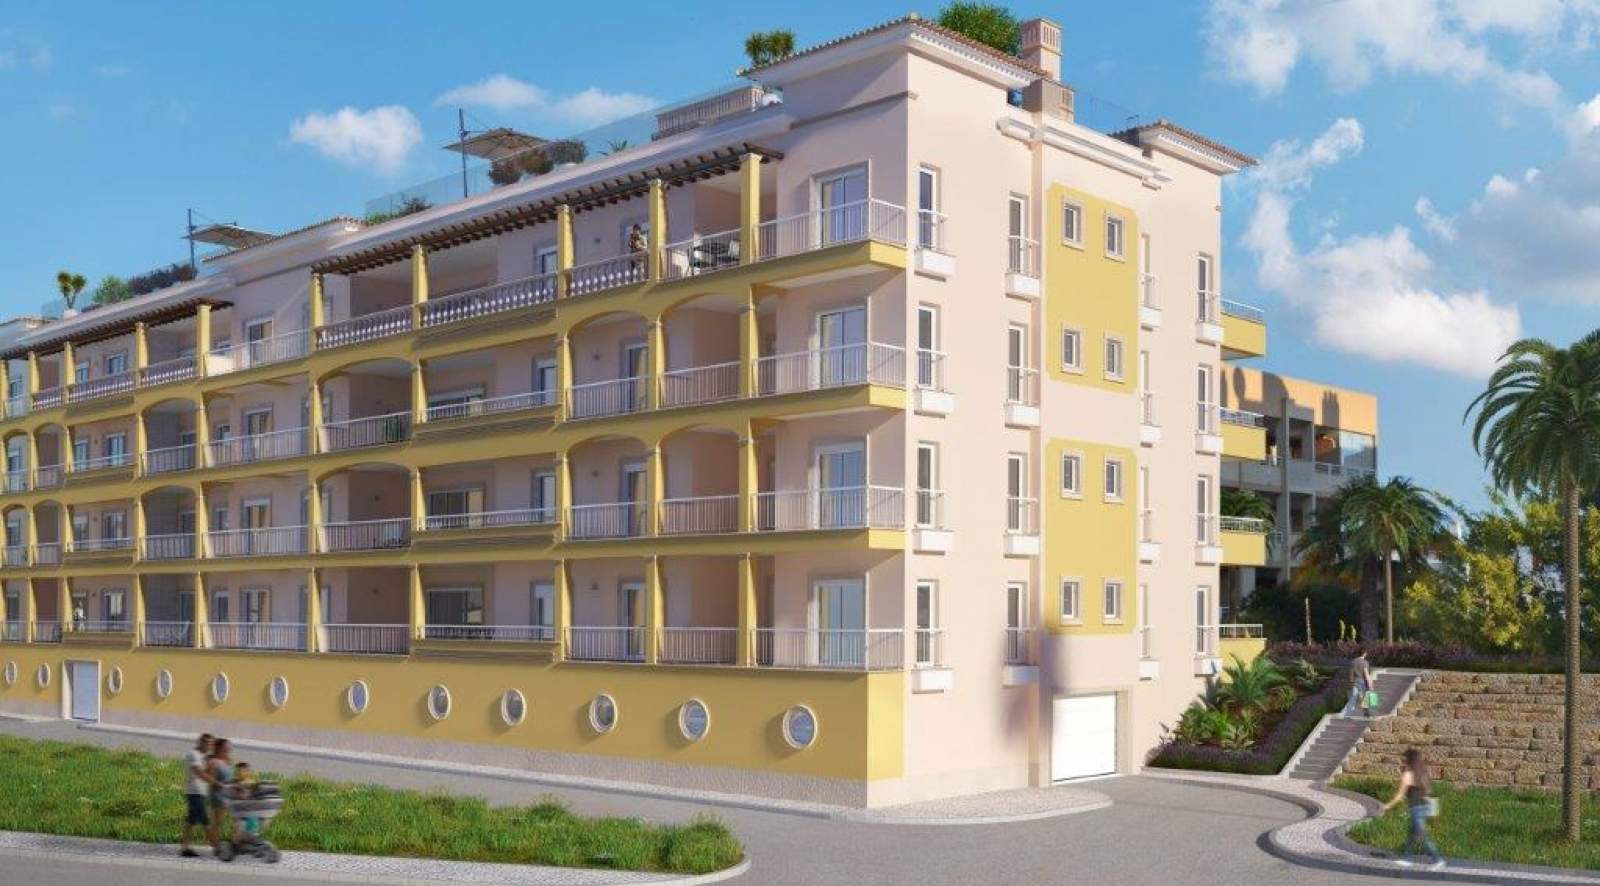 Verkauf einer Wohnung im Bau, mit Terrasse, in Lagos, Portugal_141554